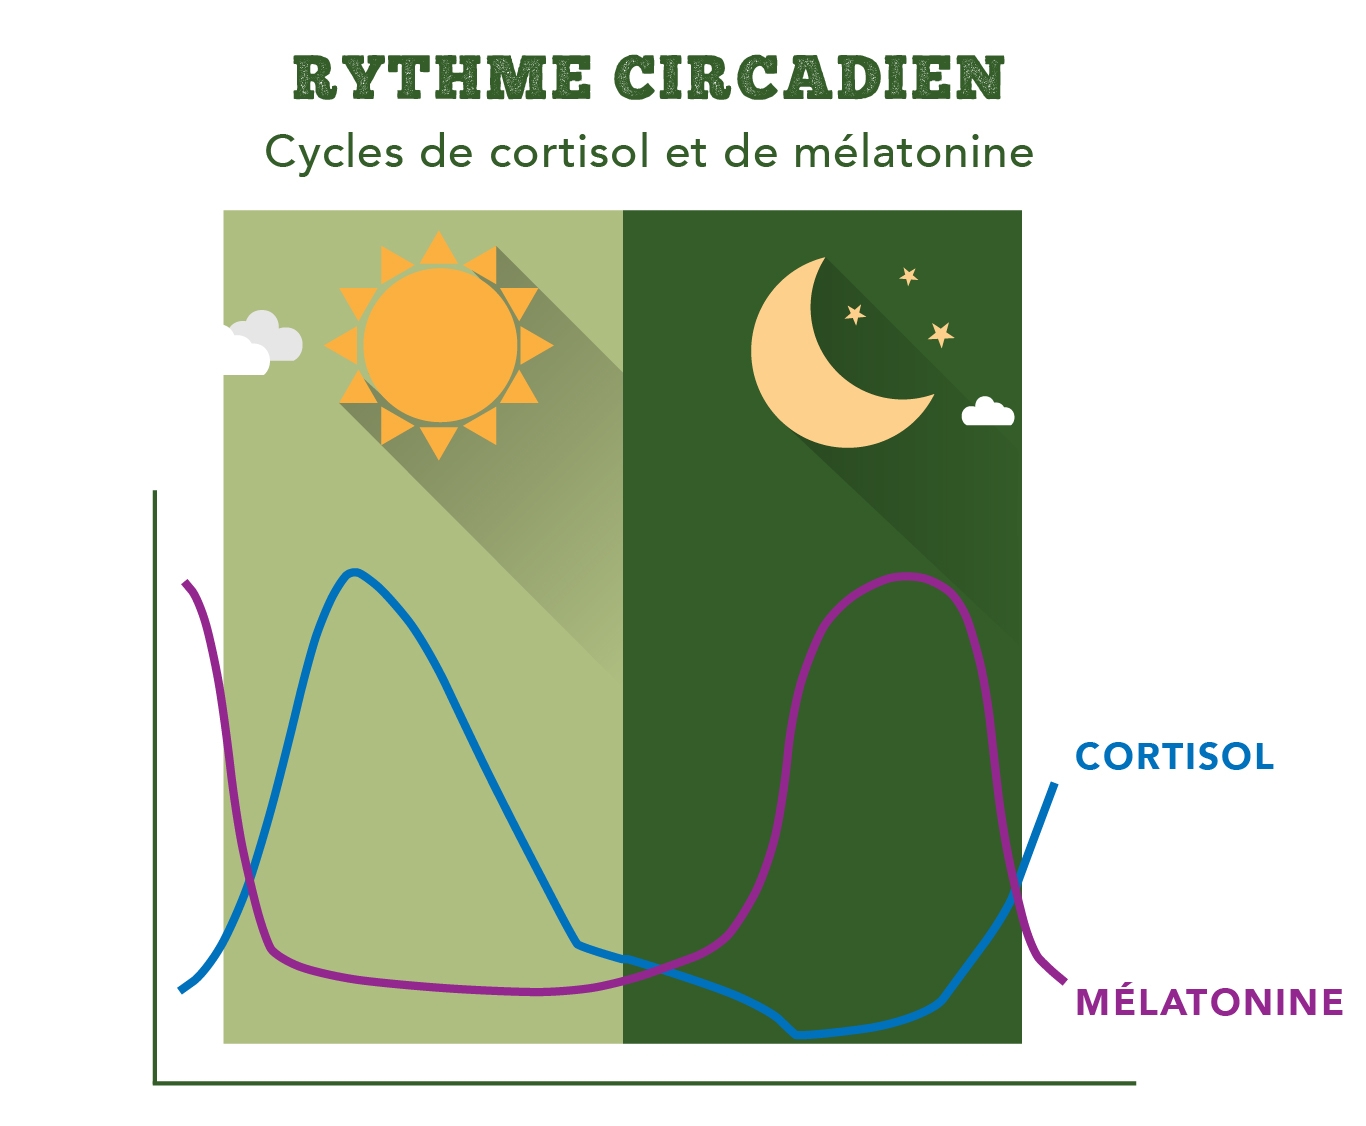 Rythme circadien